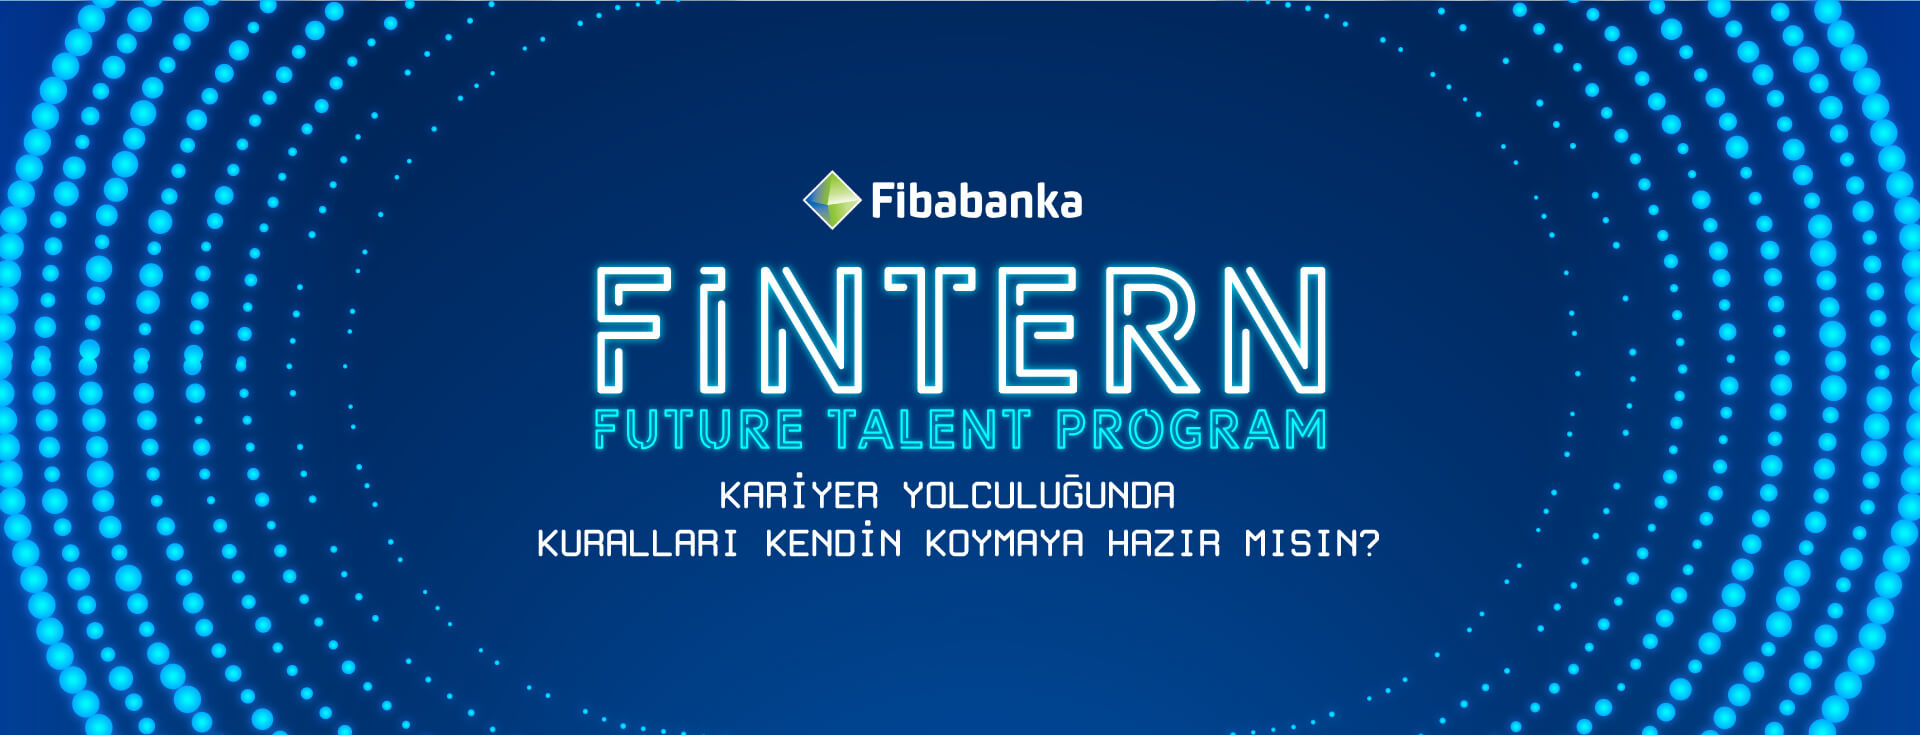 Fibabanka Fintern Future Talent Program